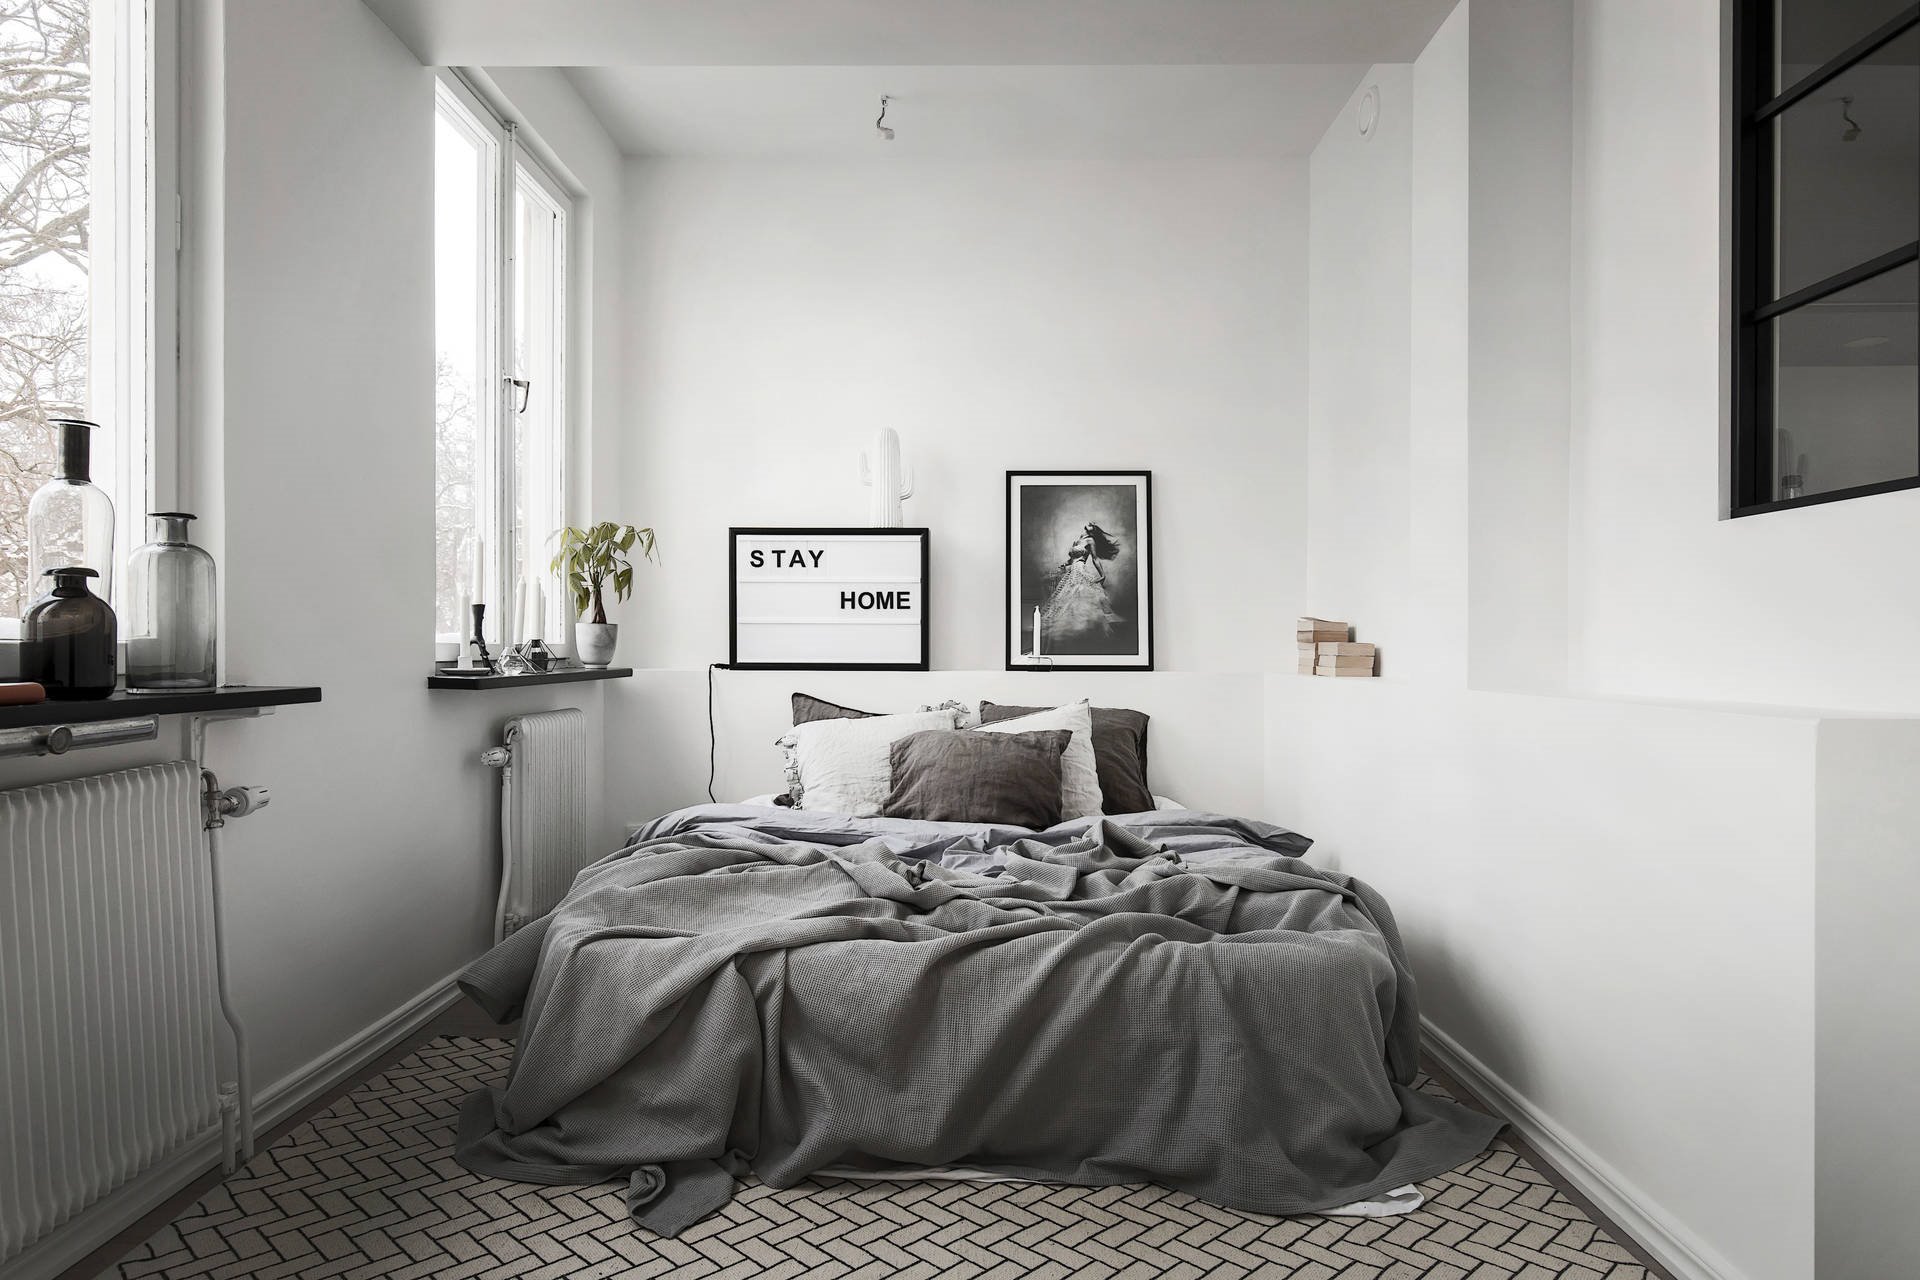 Cama king size doble con ropa de cama de color blanca y dormitorio con radiadores